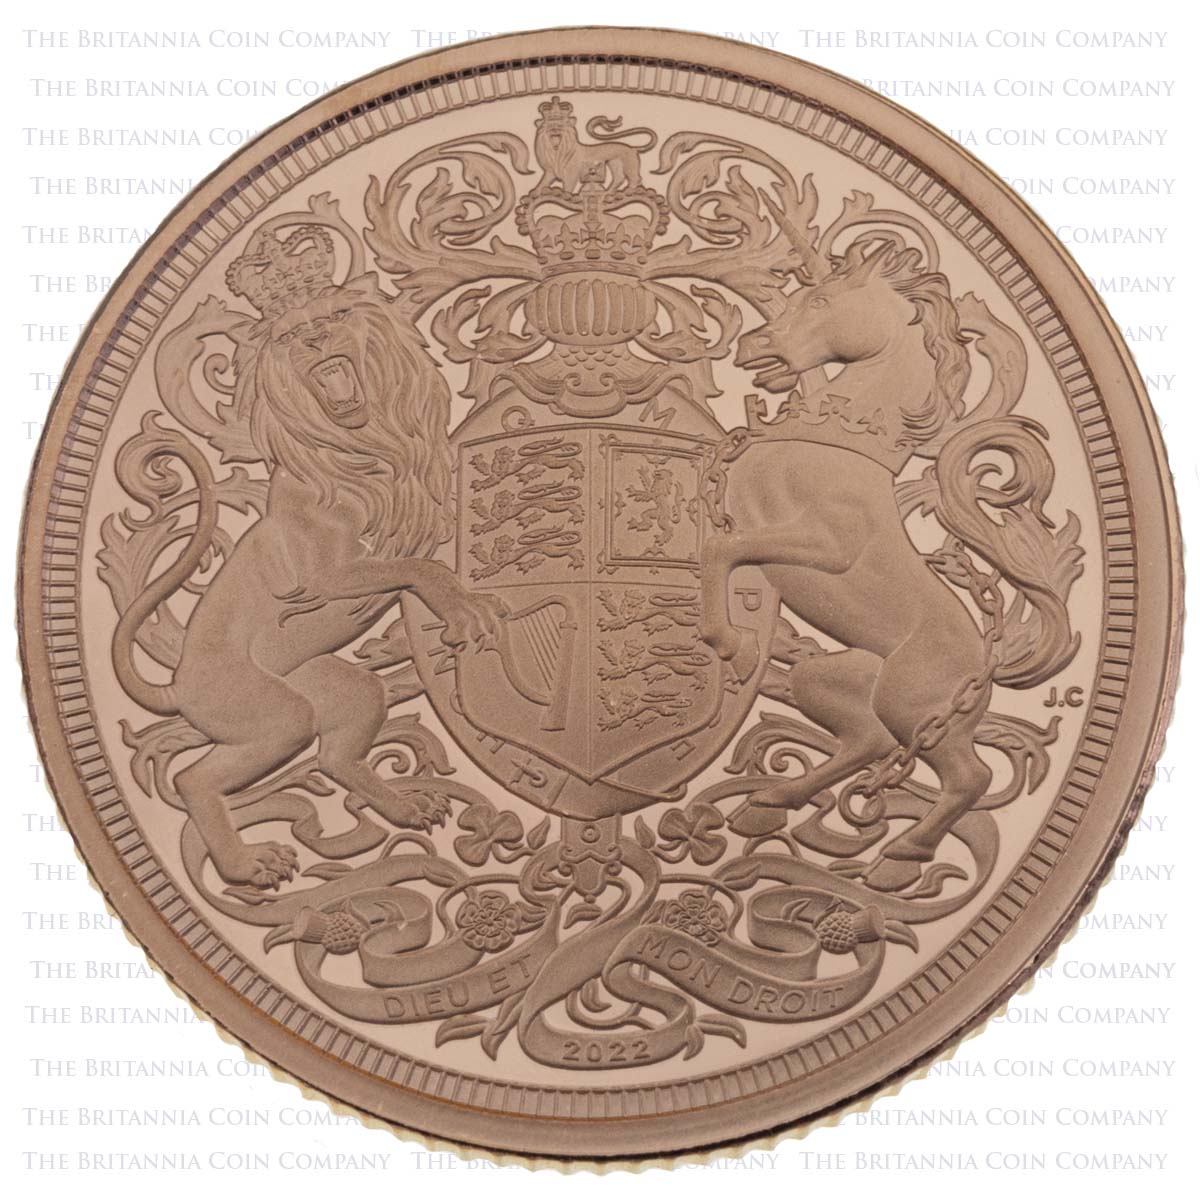 MSV22 2022 Charles III Gold Proof Sovereign Queen Elizabeth II Memorial Coin Reverse